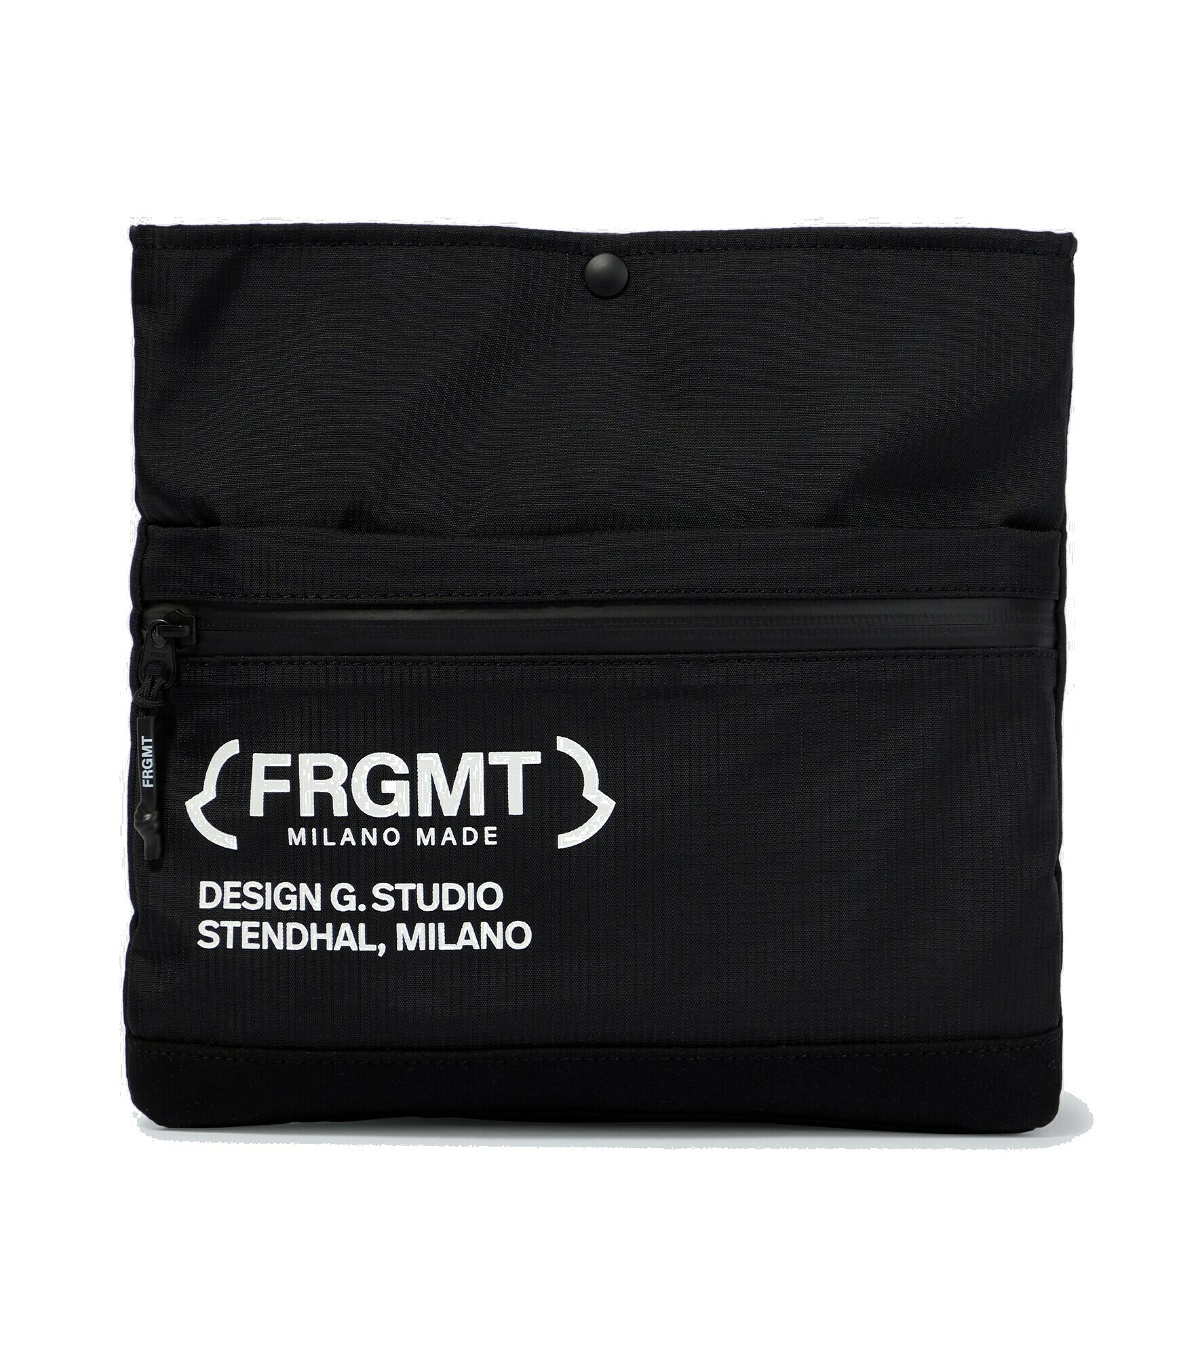 Photo: Moncler Genius - 7 Moncler FRGMT Hiroshi Fujiwara logo shoulder bag